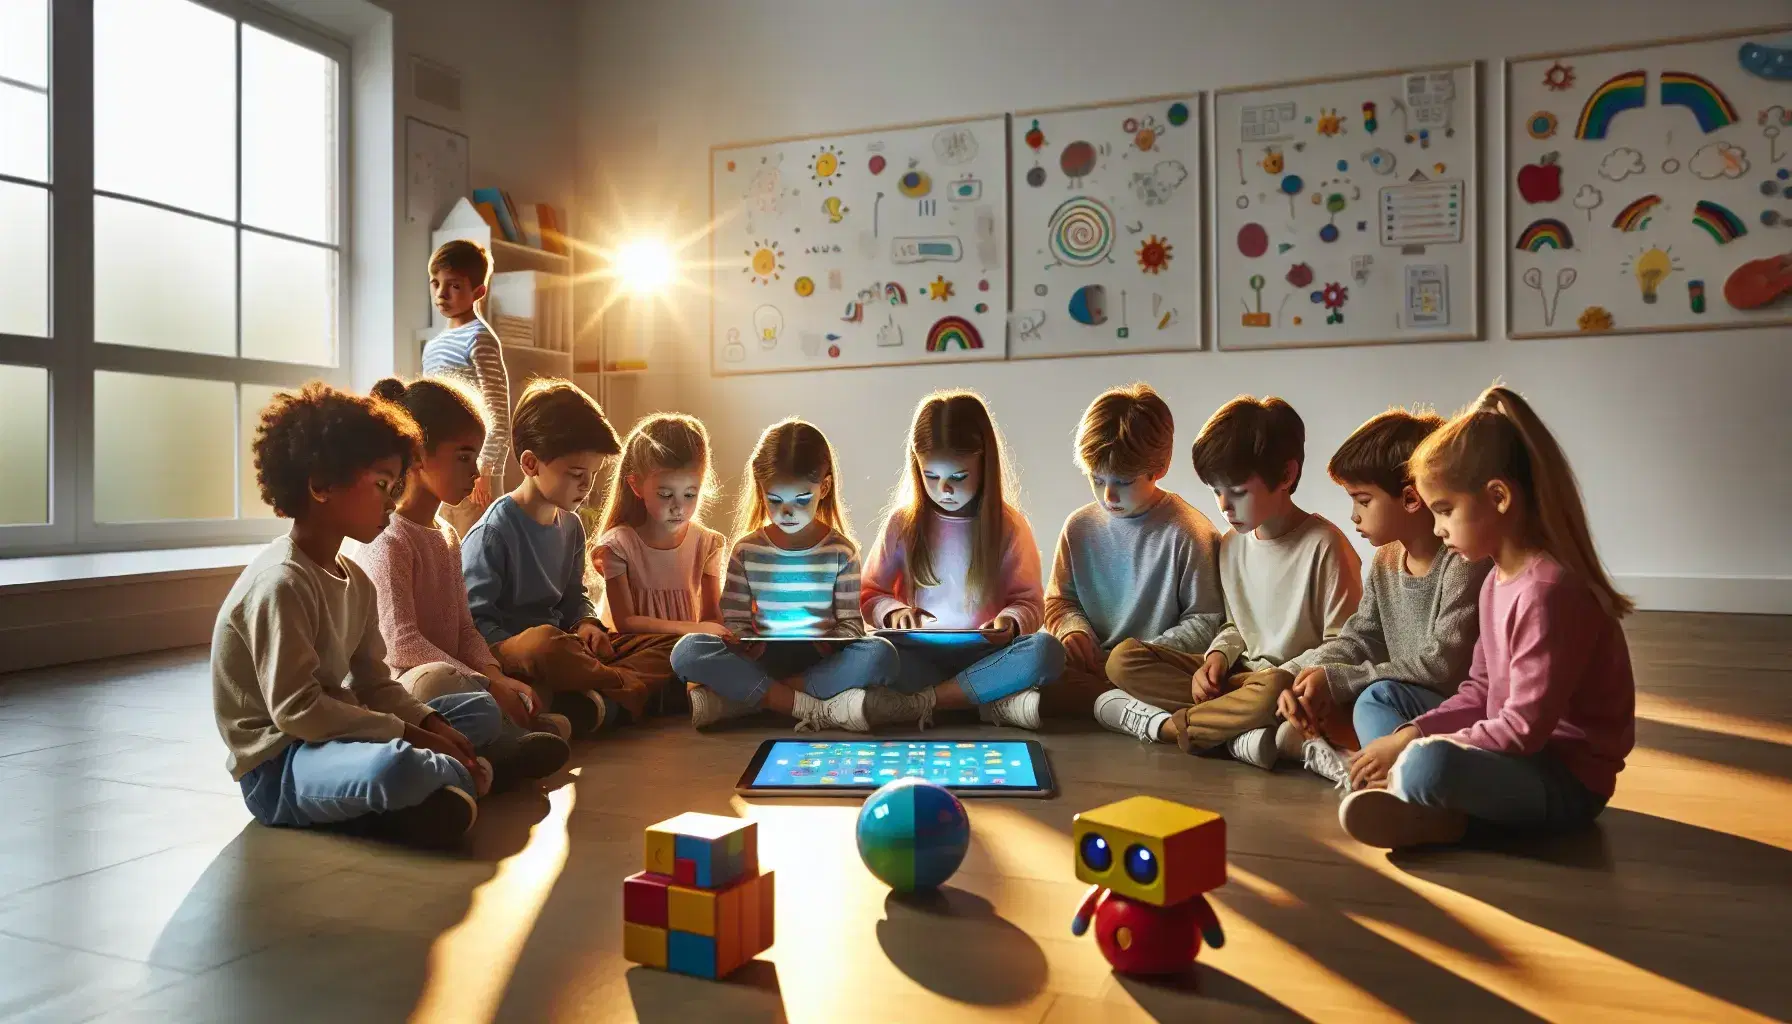 Niños de diversas etnias atentos a una tableta electrónica en un aula iluminada naturalmente, rodeados de laptops y robots educativos de colores primarios.